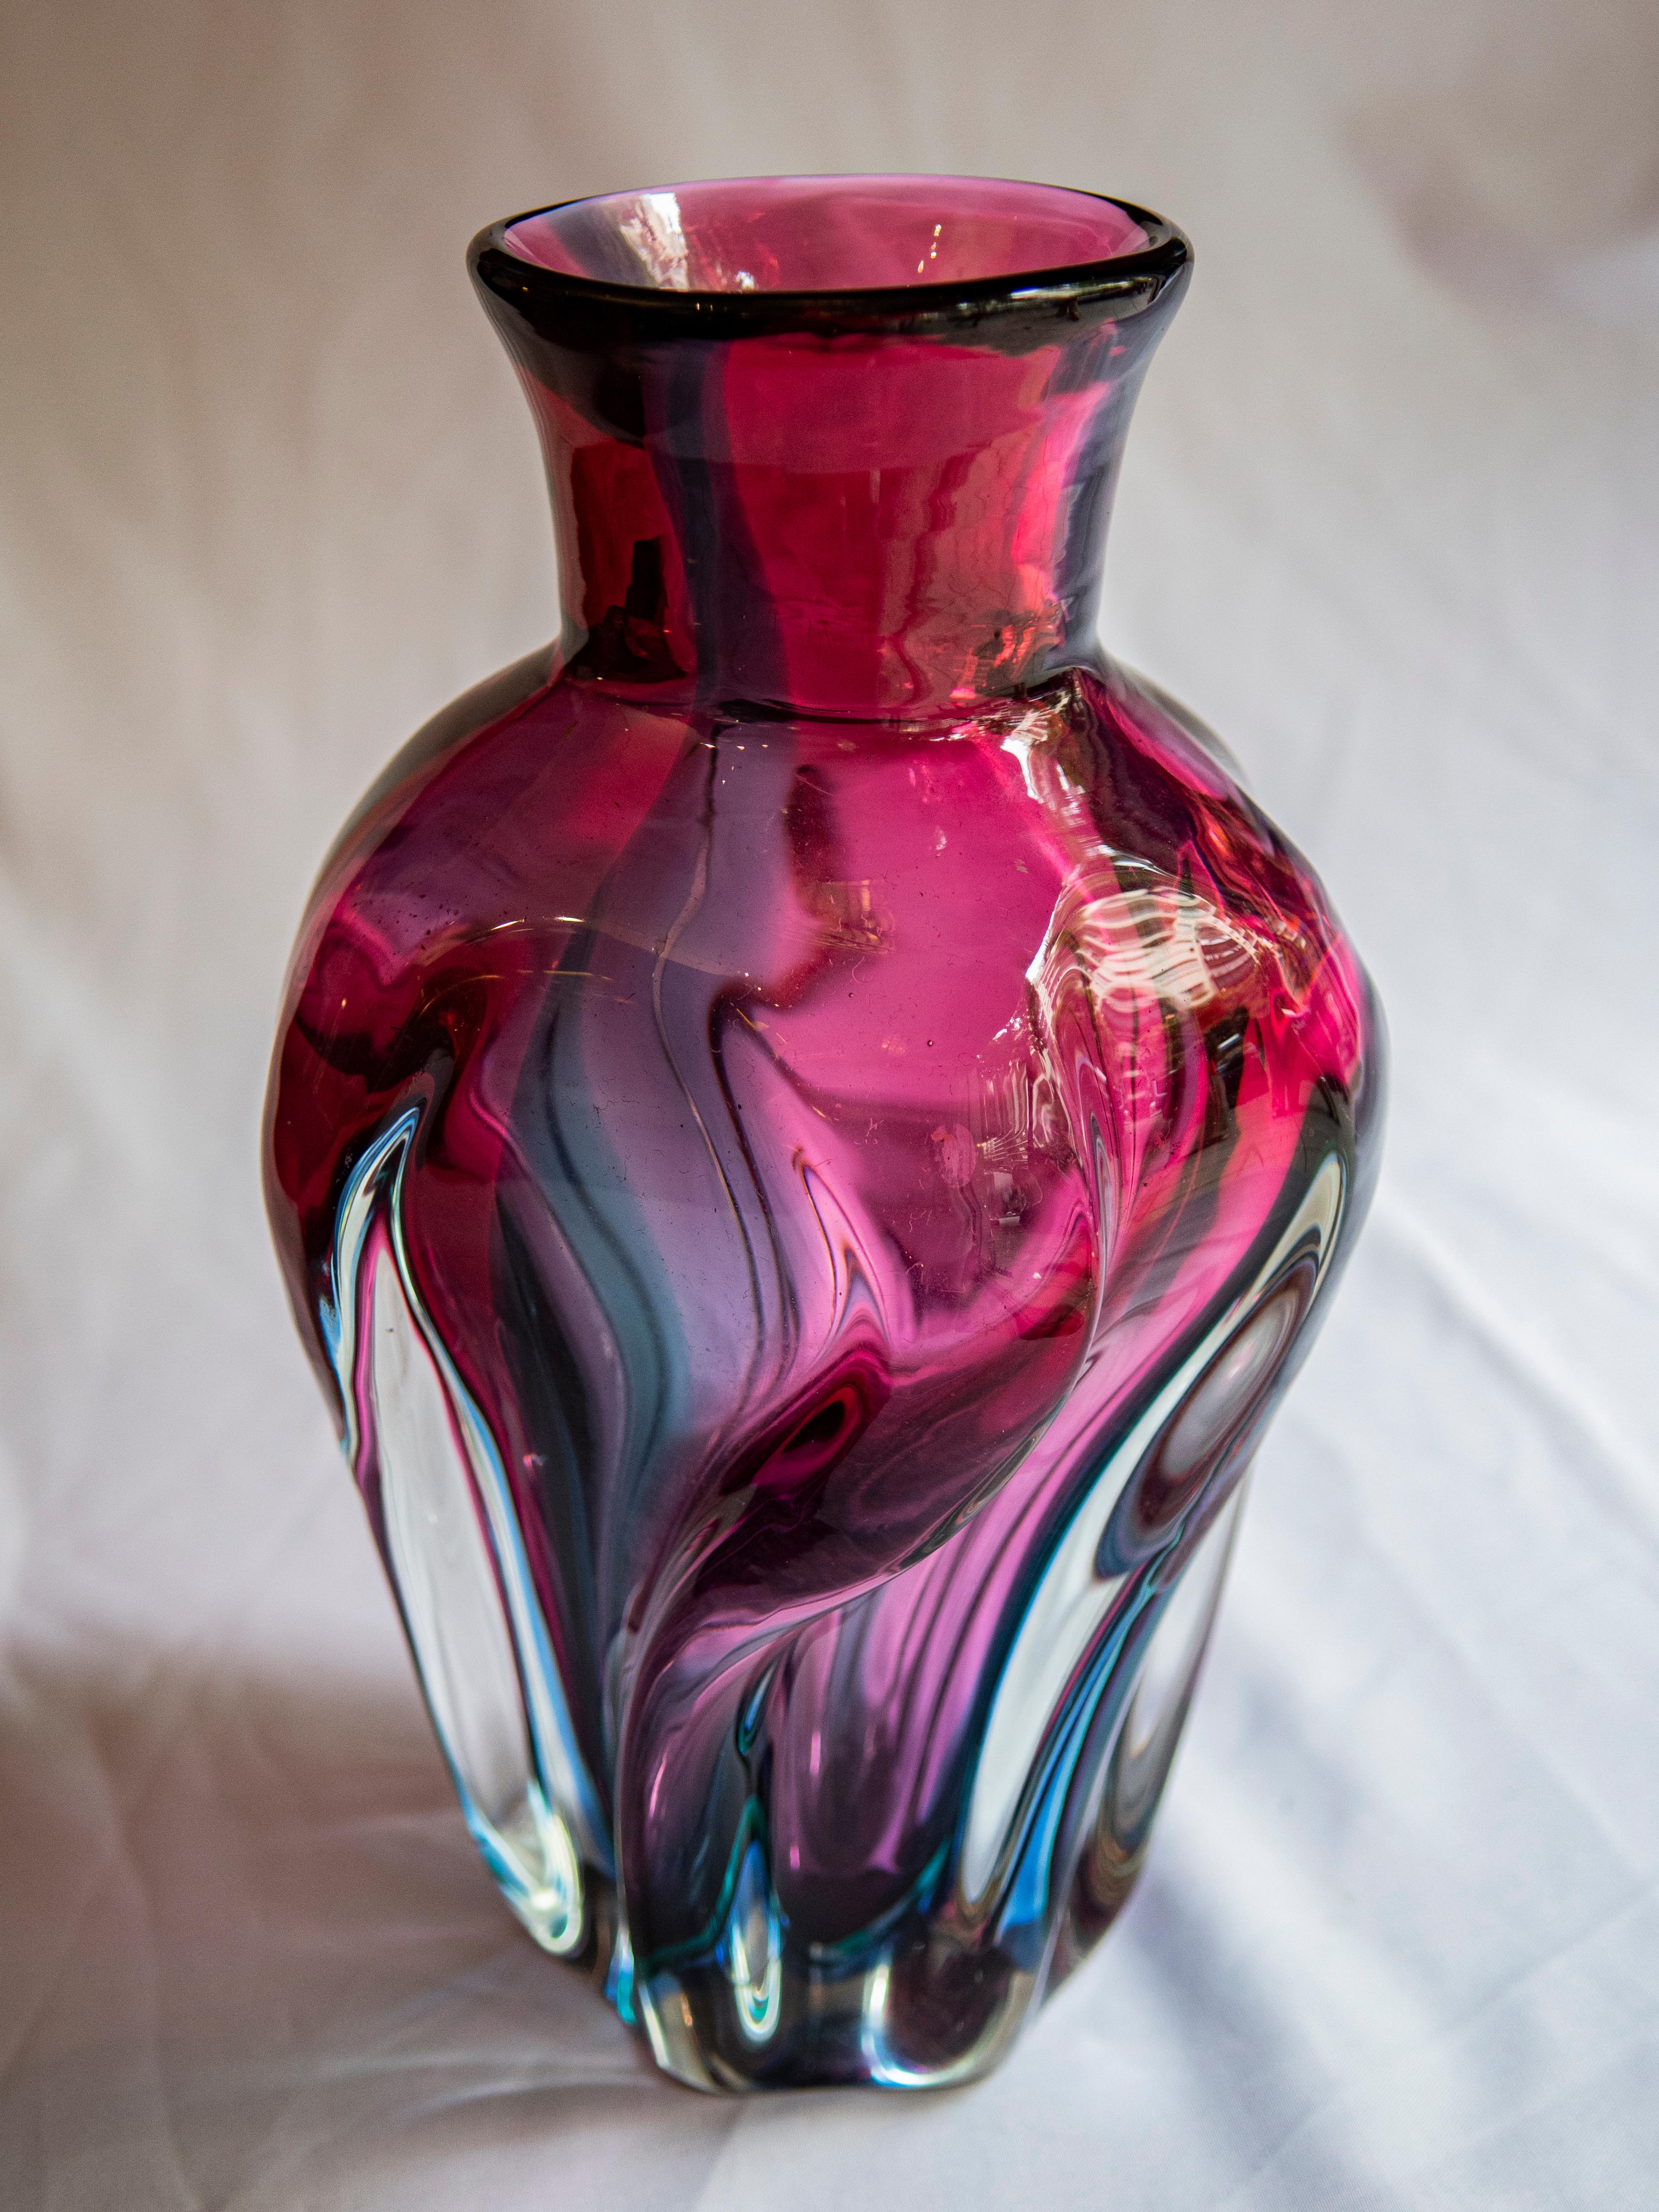 Tauchen Sie ein in die wirbelnden Farben eines Meisterwerks der Jahrhundertmitte: die Glasvase Josef Hospodka Chribska. Seine leuchtenden violetten, rosa und blauen Farben tanzen in perfekter Harmonie, ein Beweis für die Kunstfertigkeit von